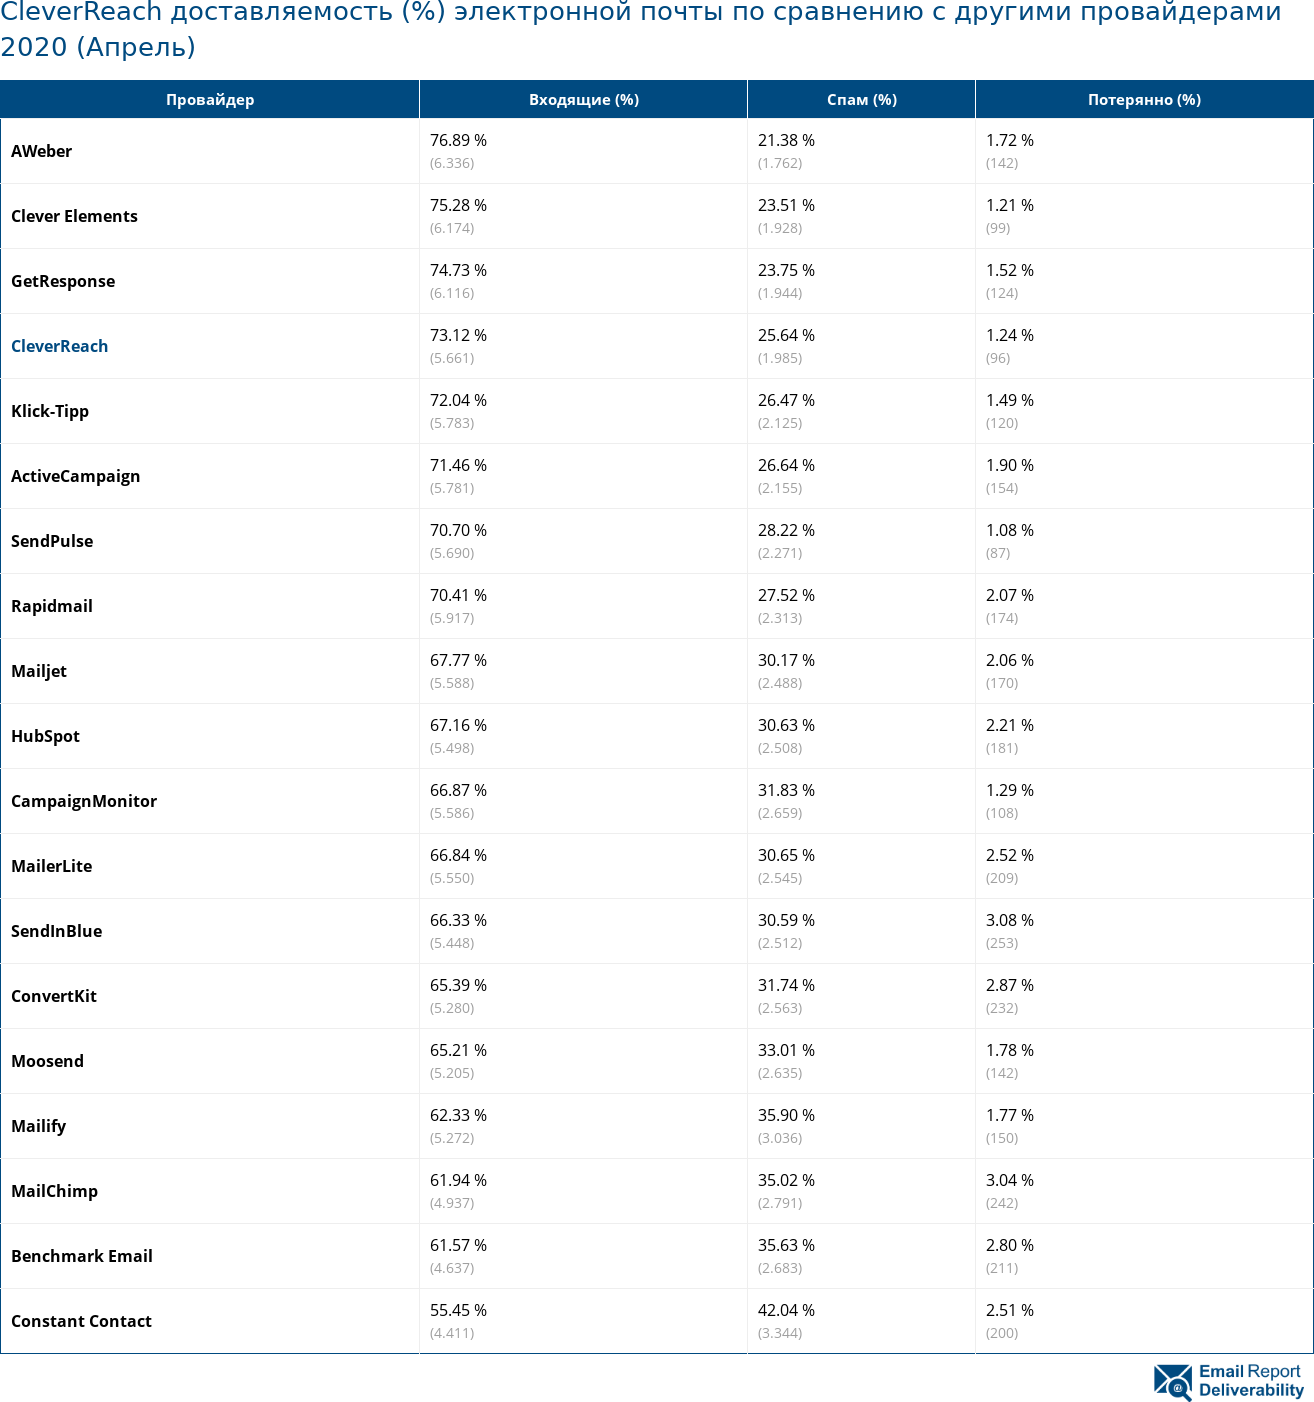 CleverReach доставляемость (%) электронной почты по сравнению с другими провайдерами 2020 (Апрель)